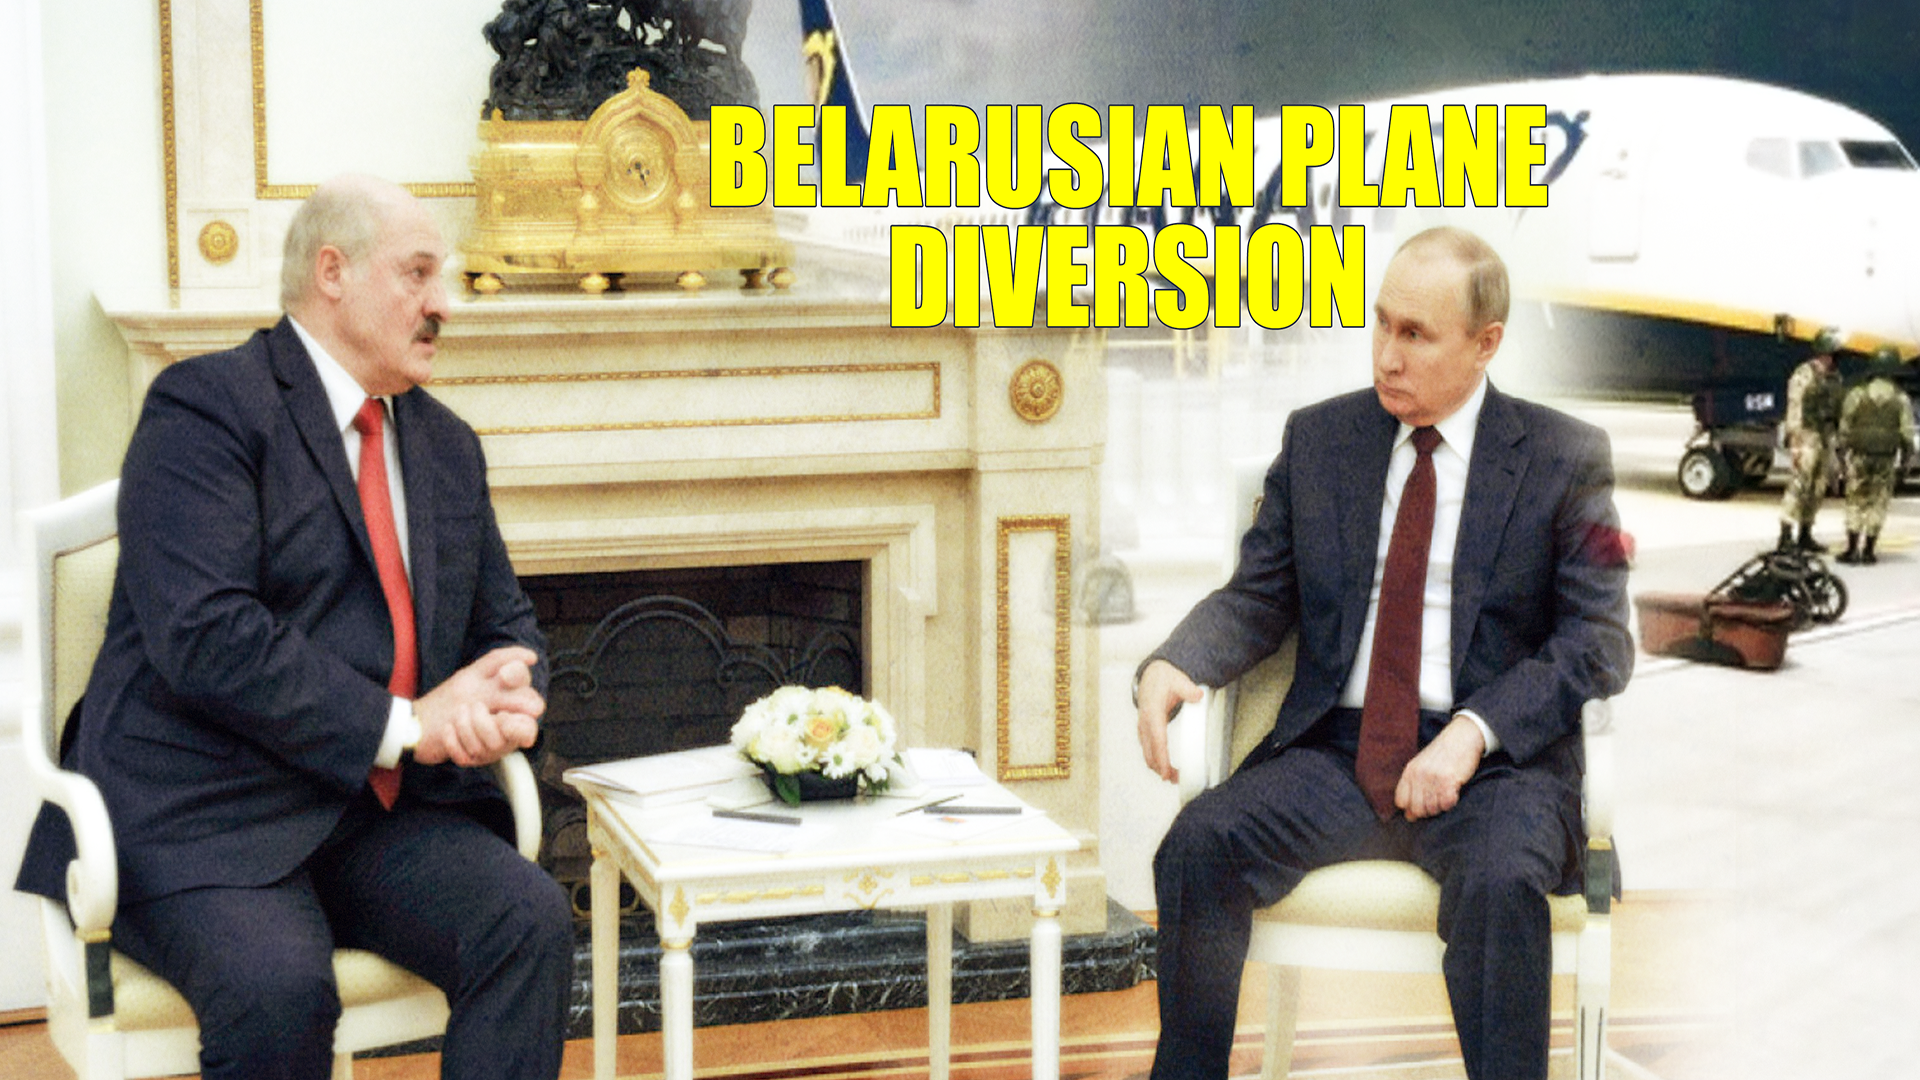 Belarusian plane diversion to Putin